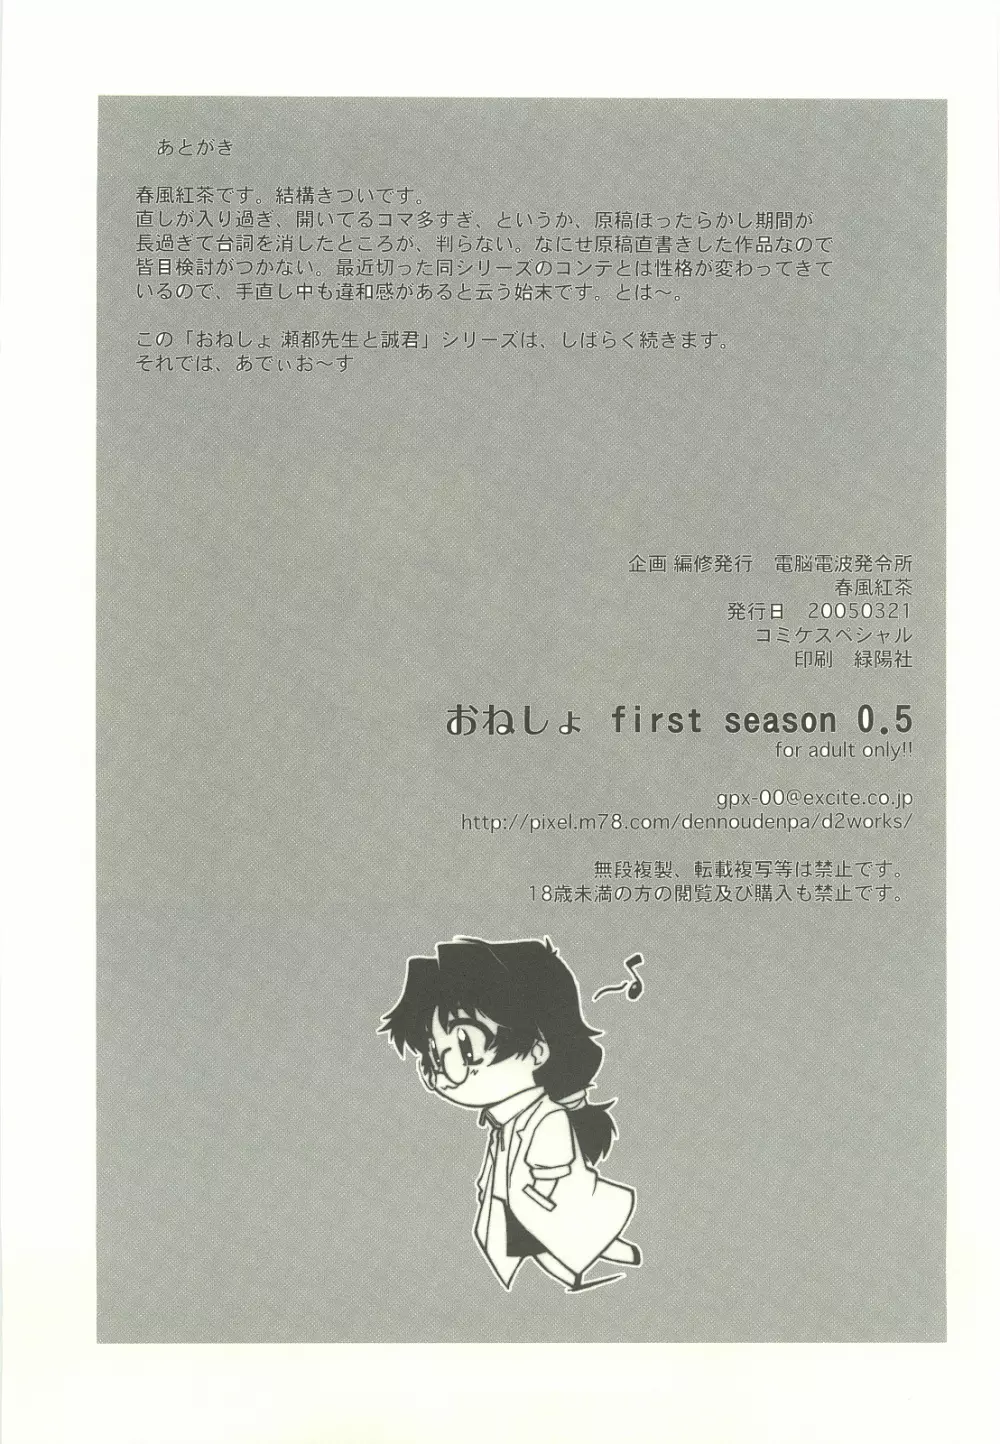 おねしょ first season ver.0.5 - page7